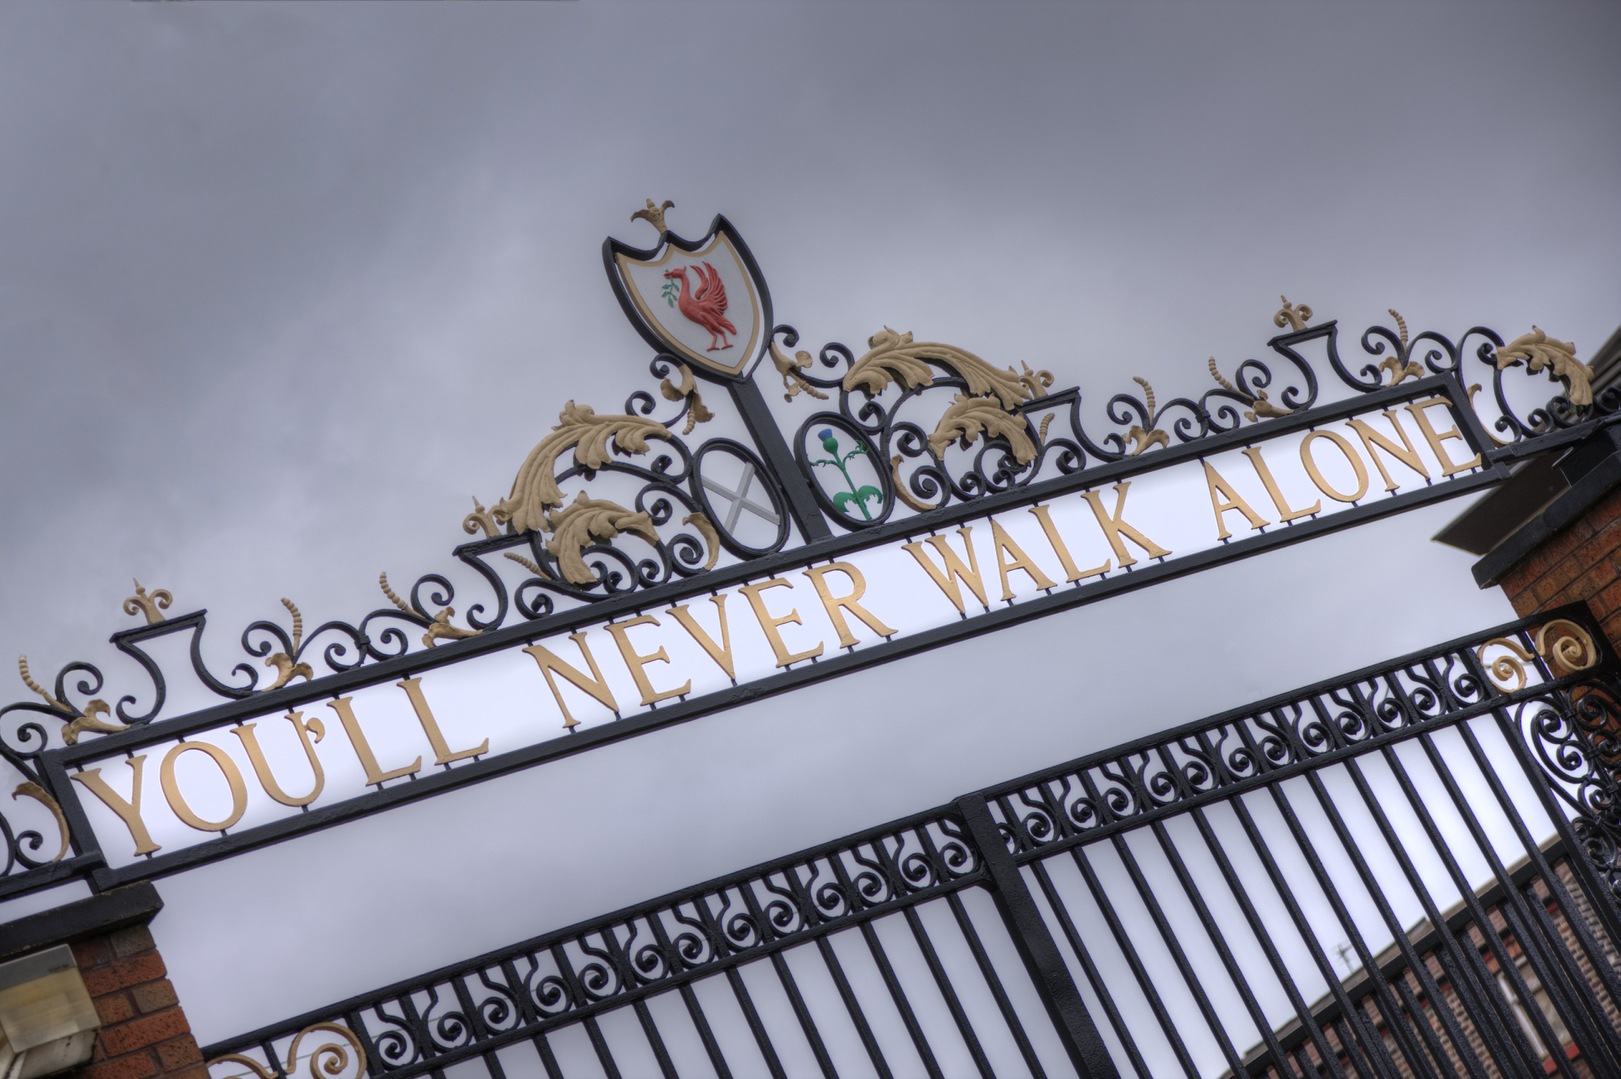 You'll Never Walk Alone = Você nunca caminha sozinho - é parte da letra do hino do Liverpool football club